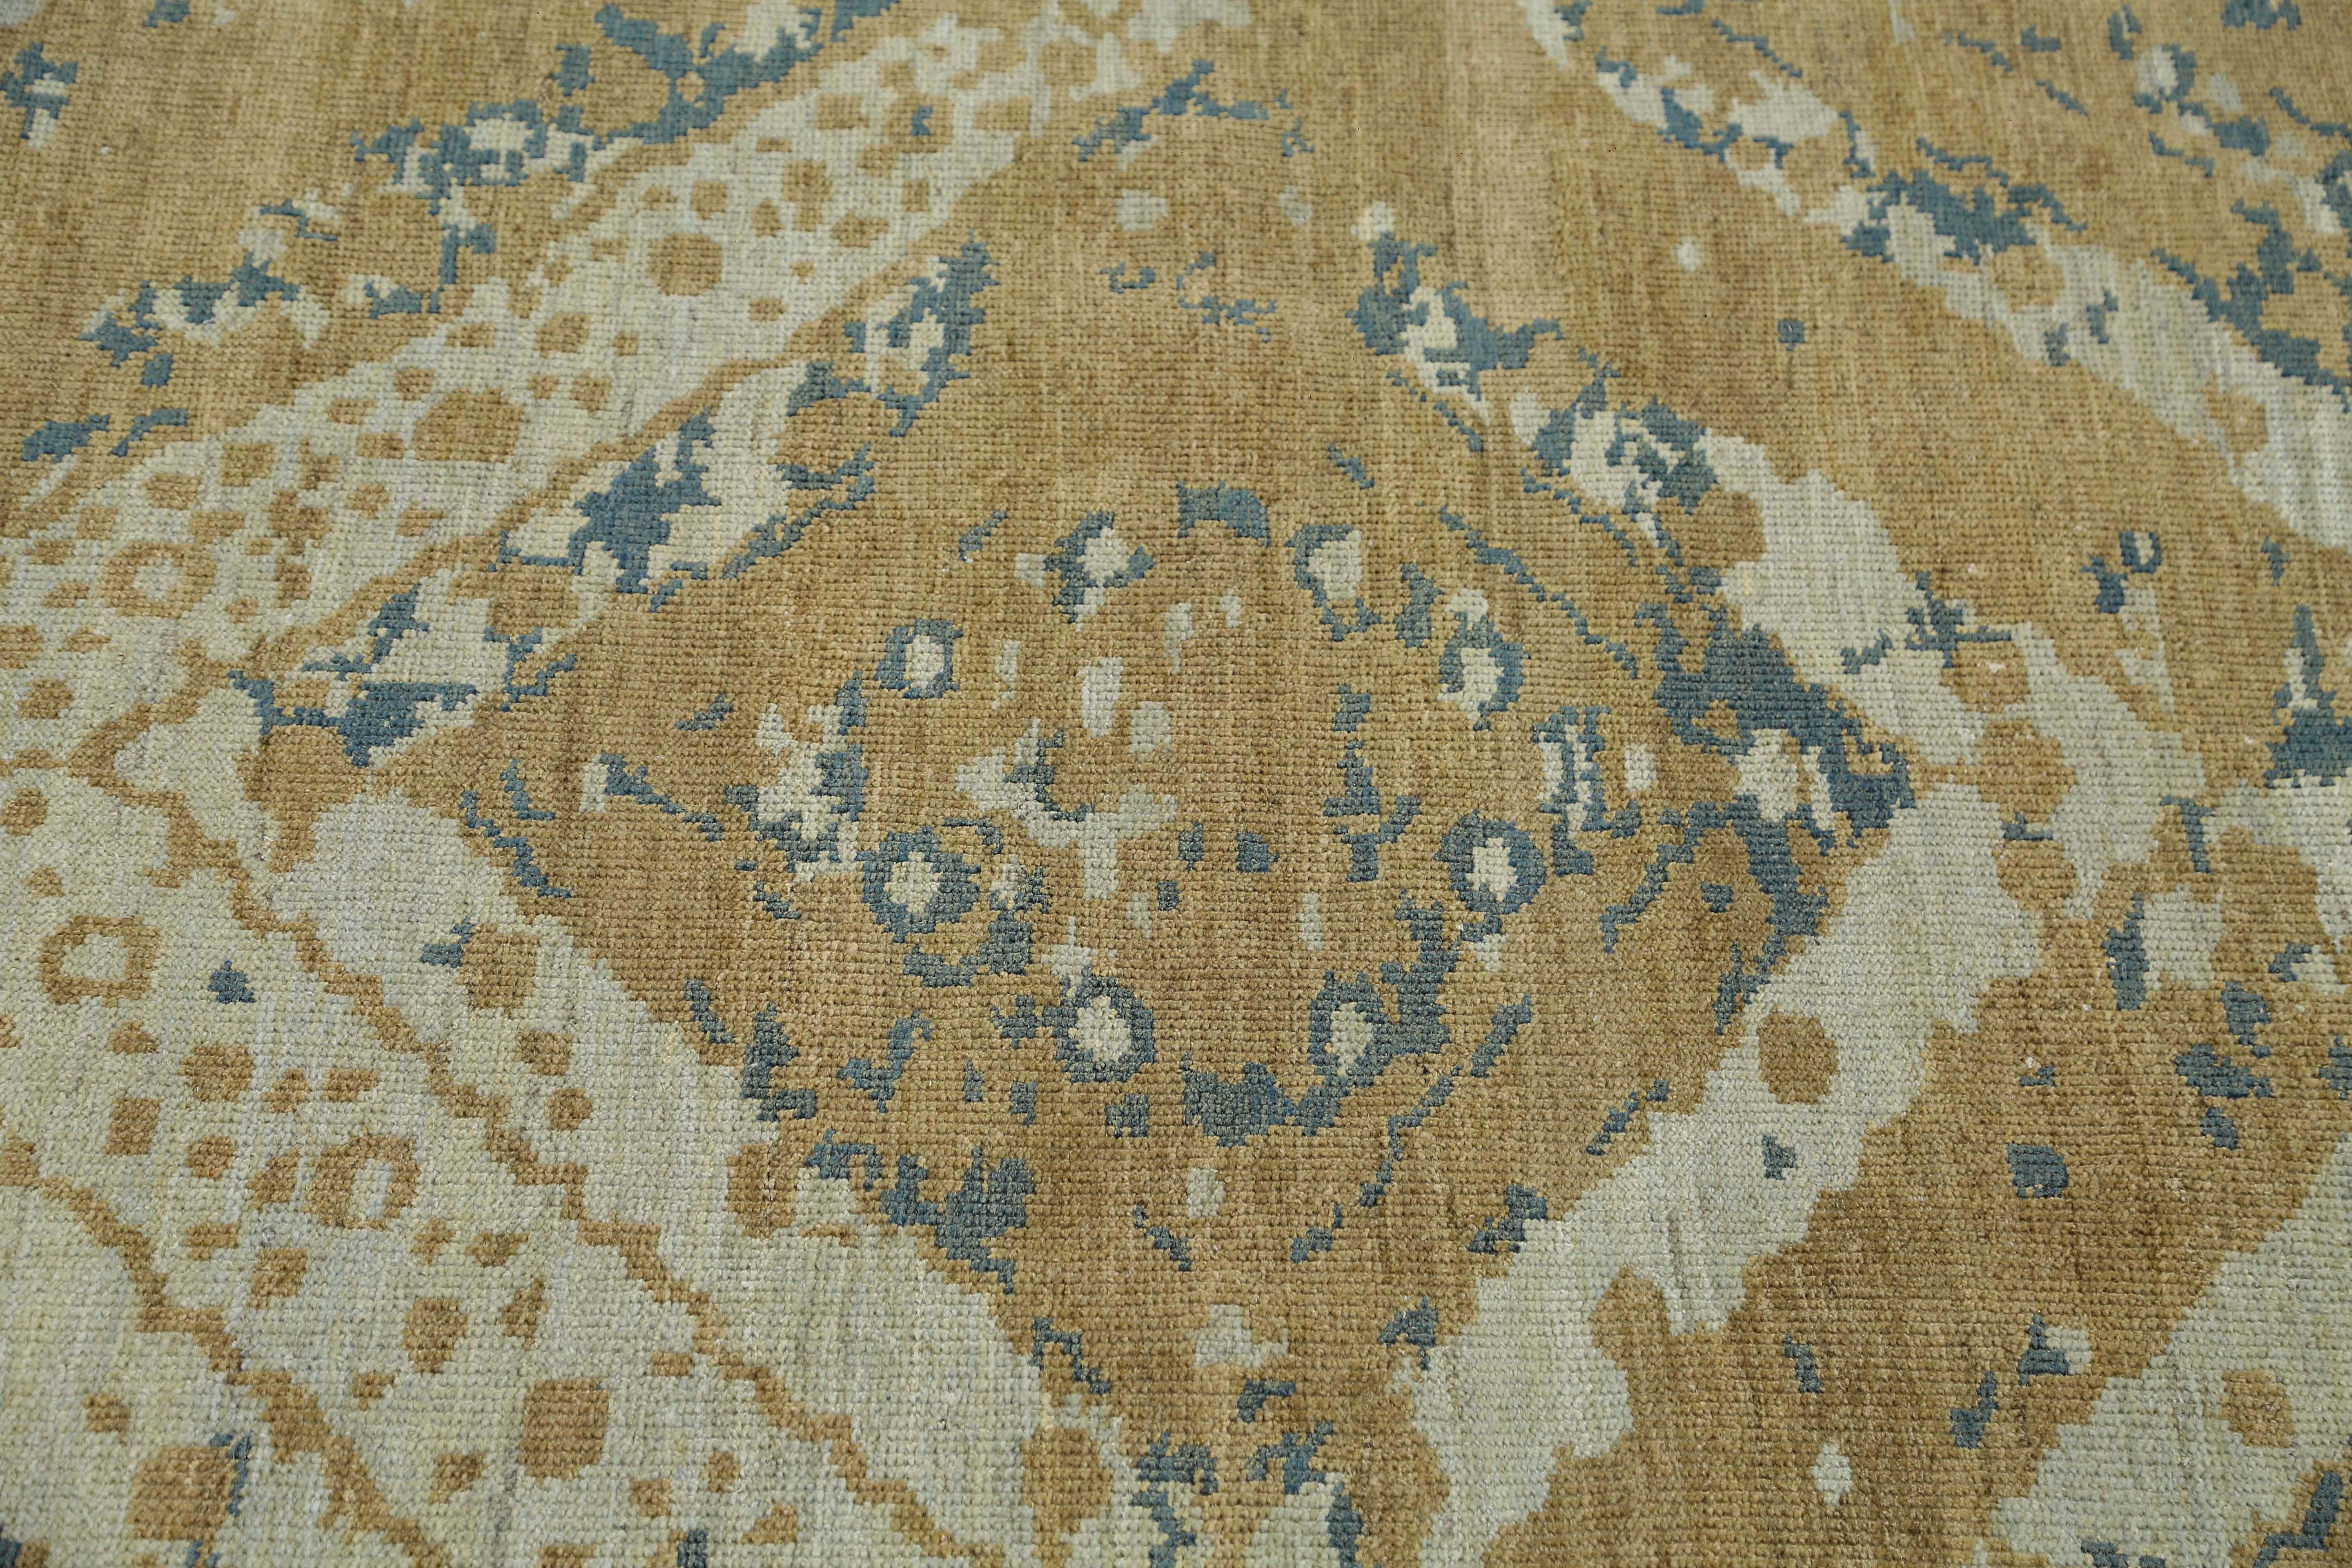 Wir stellen Ihnen unseren exquisiten handgefertigten türkischen Sultanabad-Teppich mit den Maßen 8 Fuß mal 10 Fuß vor, der Ihrem Zuhause einen Hauch von Eleganz und Stil verleiht.

Dieser Teppich wird von geschickten Kunsthandwerkern mit